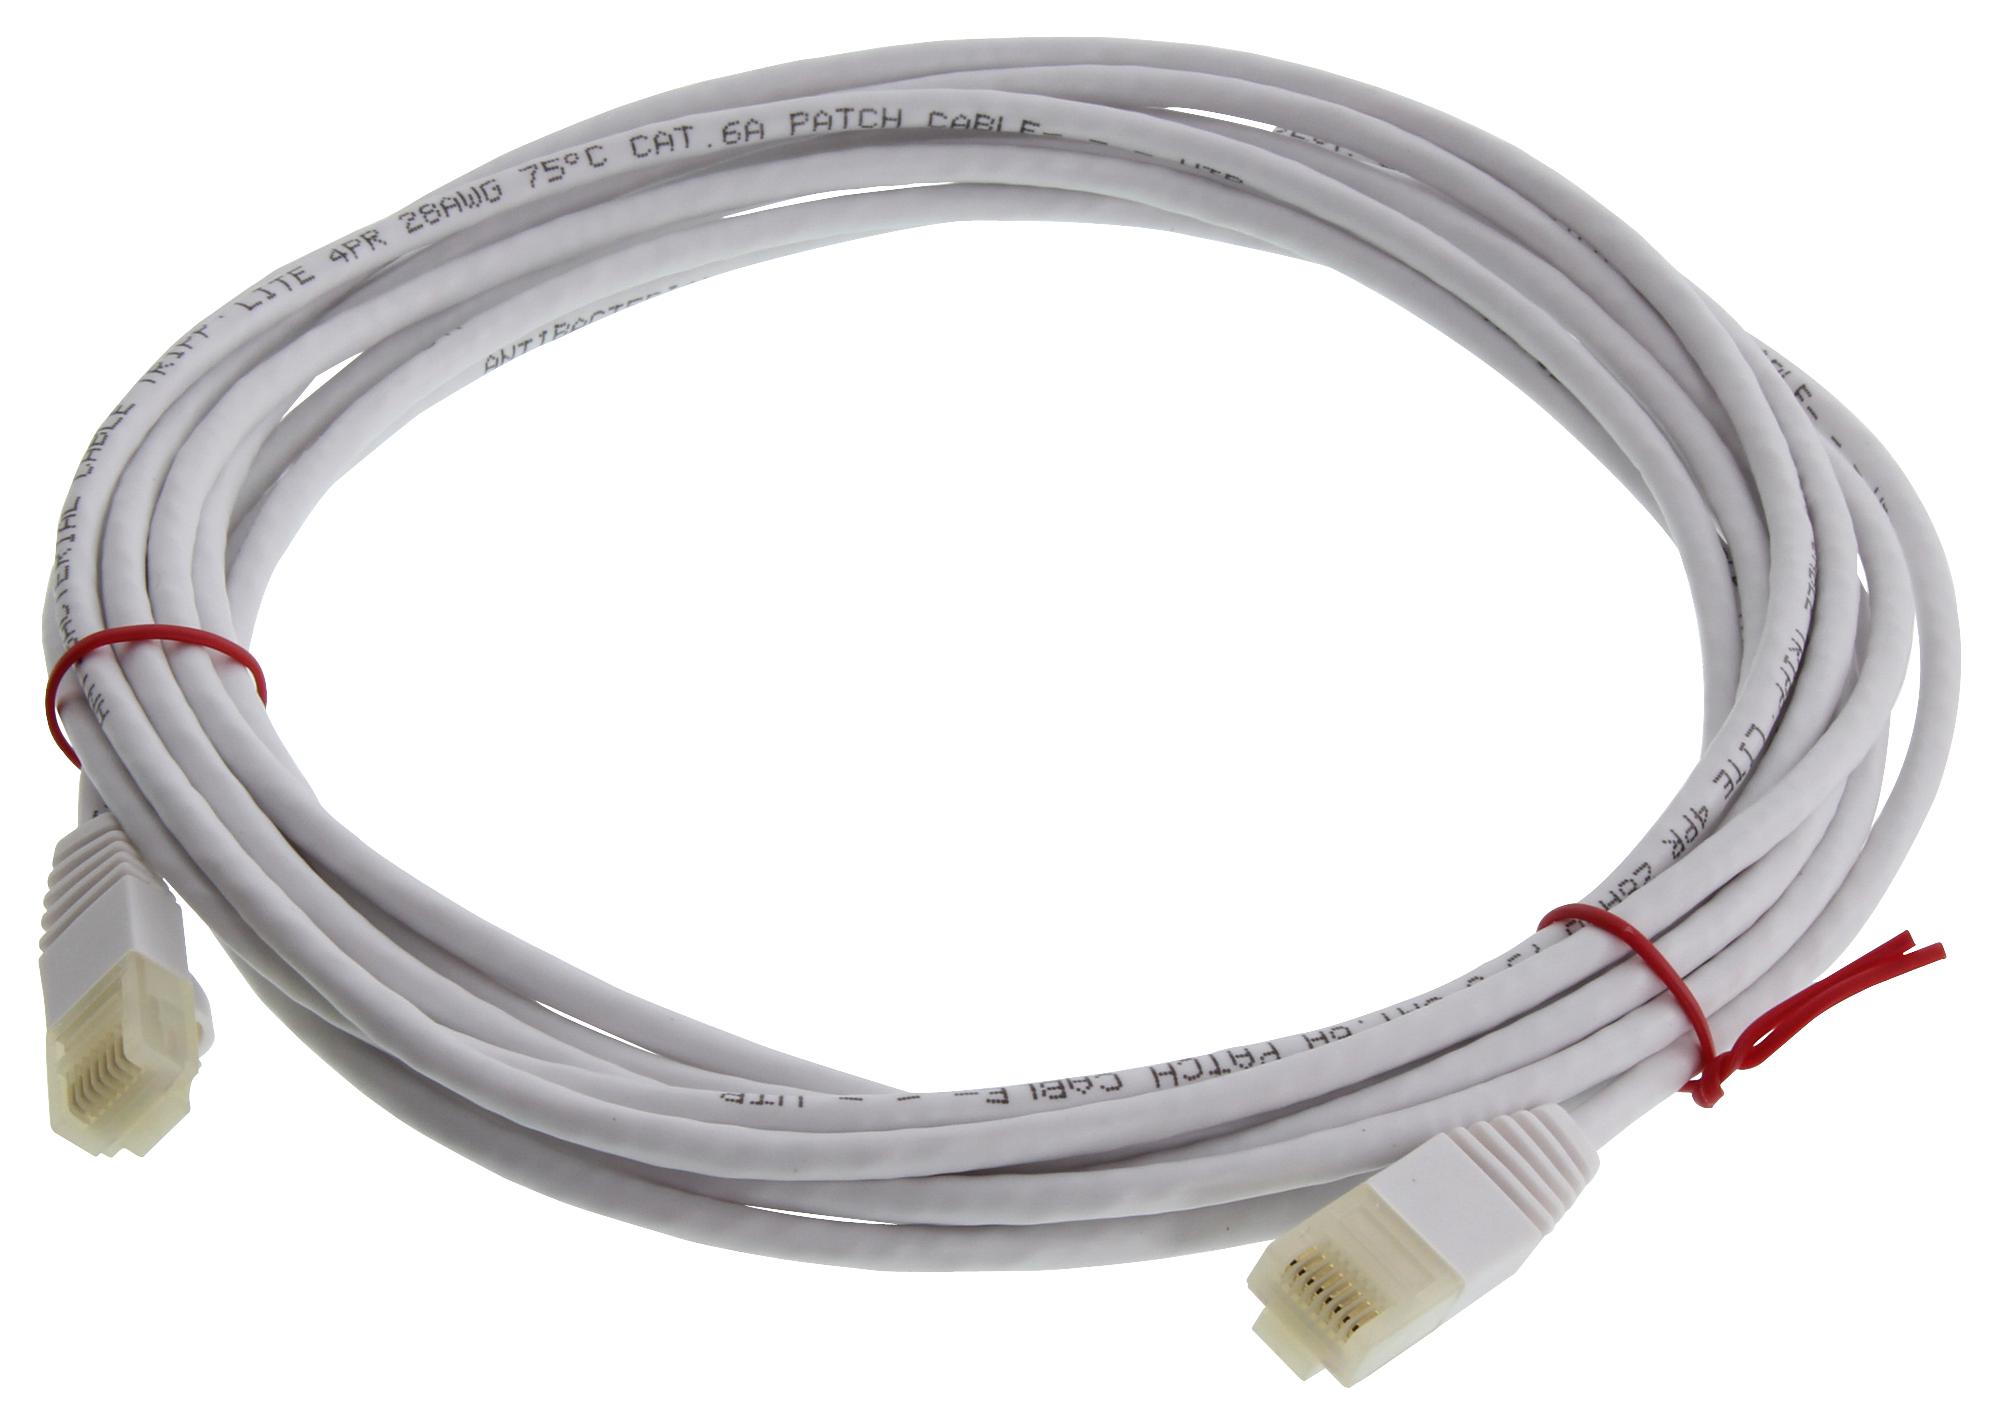 Eaton Tripp Lite N261Ab-S15-Wh Enet Cable, Rj45 Plug-Plug, 15Ft, White